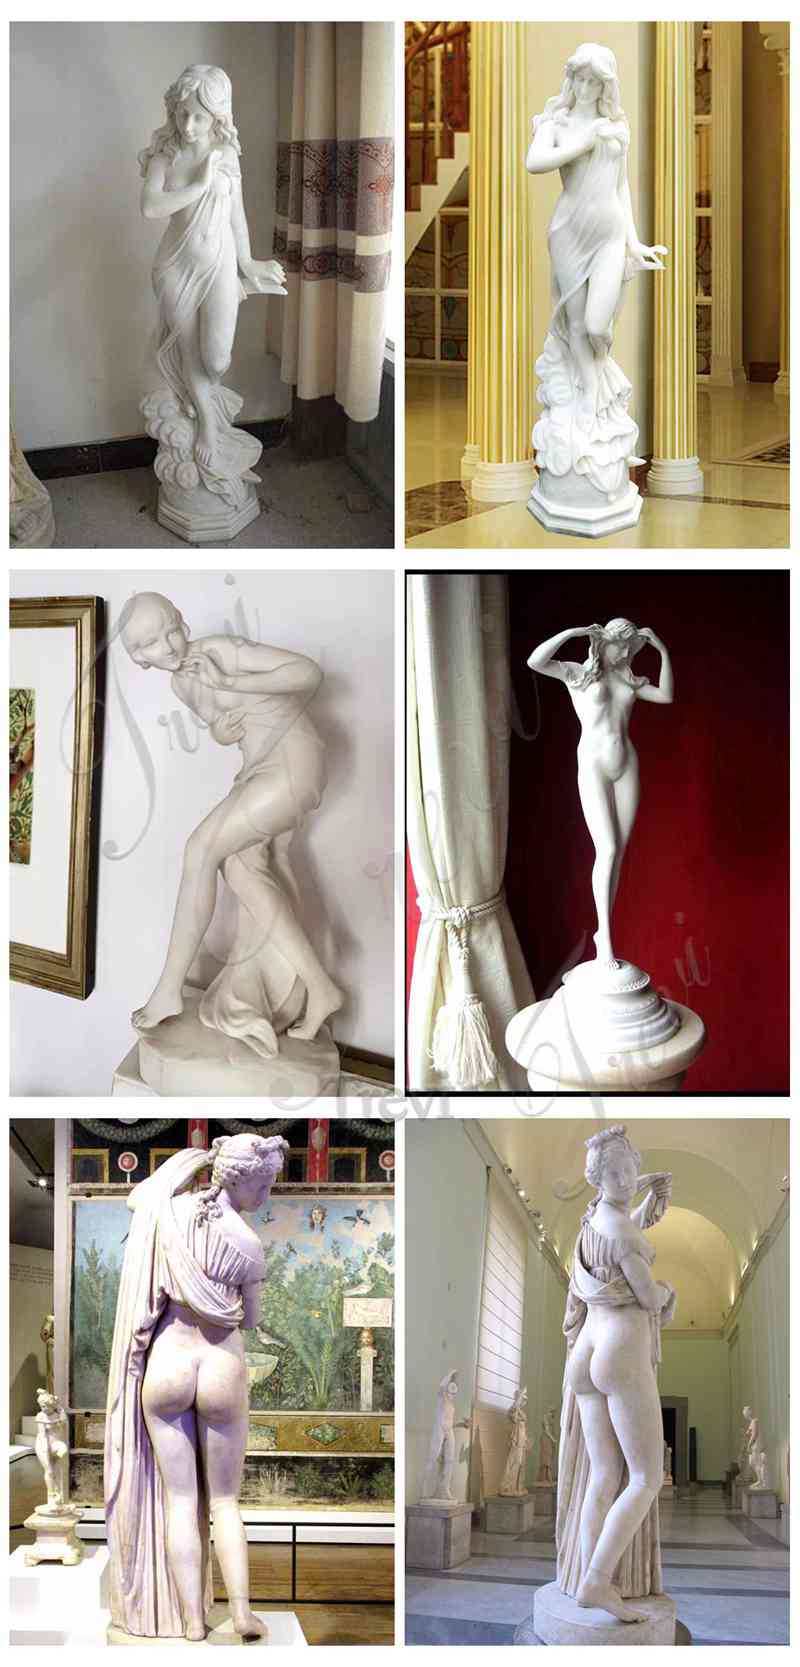 nude women outdoor-Trevi Sculpture